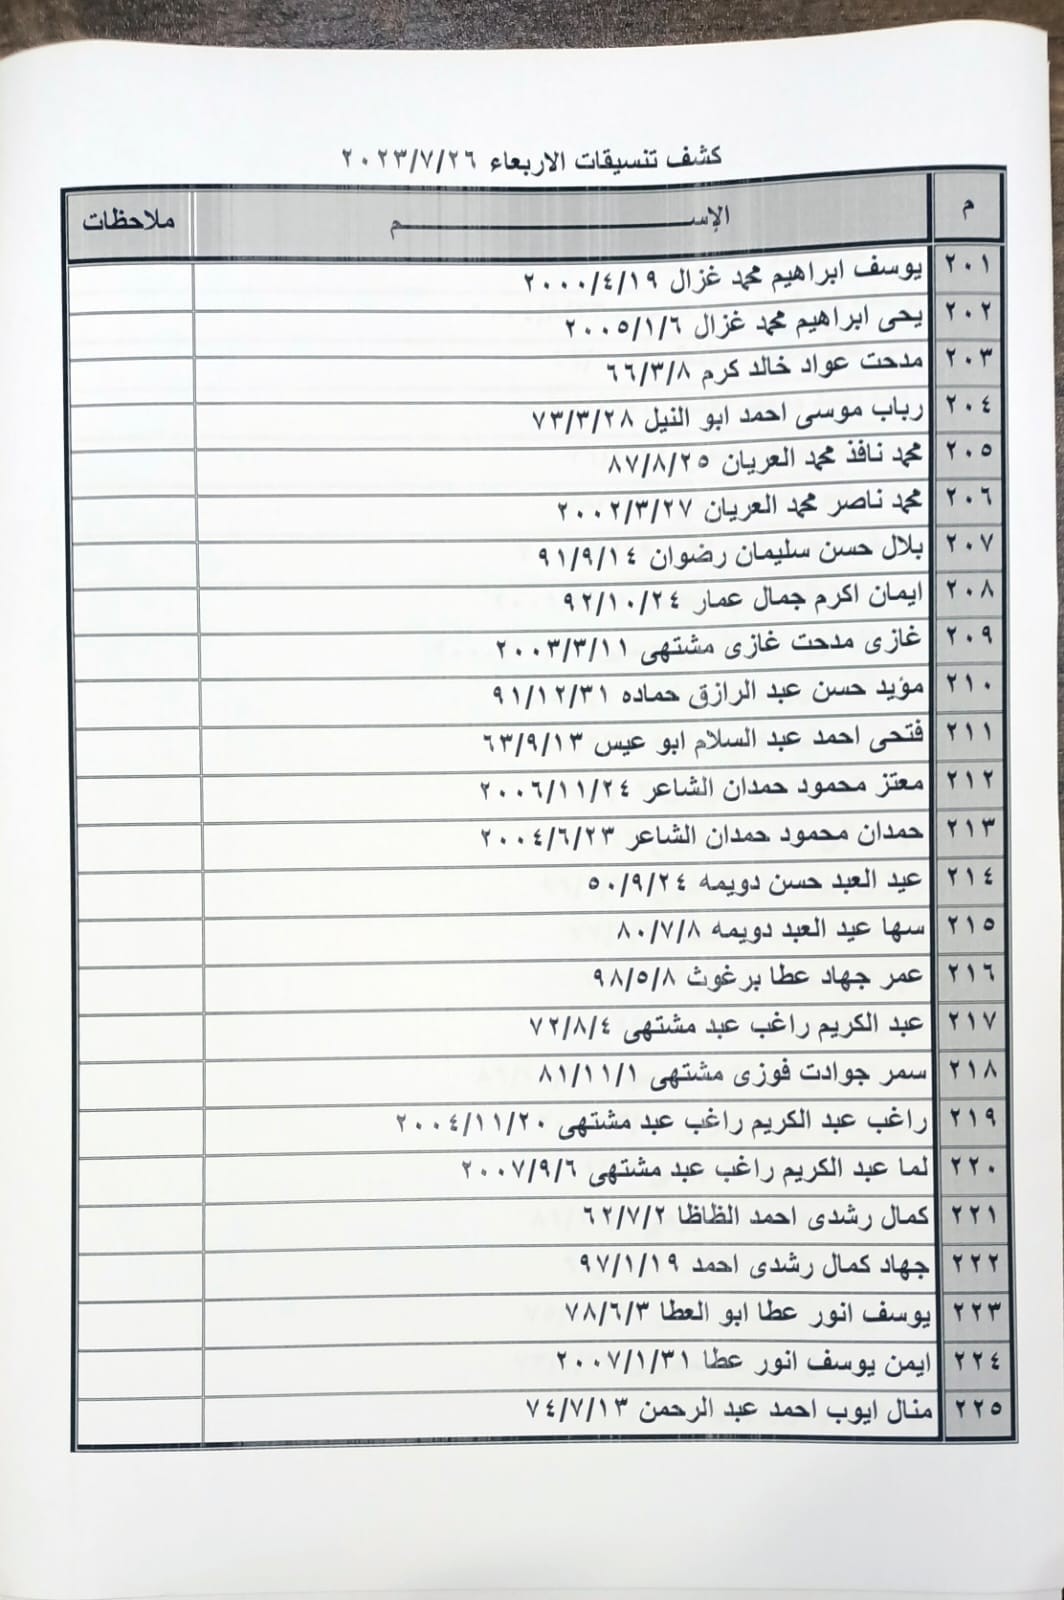 بالأسماء: كشف "التنسيقات المصرية" للسفر عبر معبر رفح الأربعاء 26 يوليو 2023